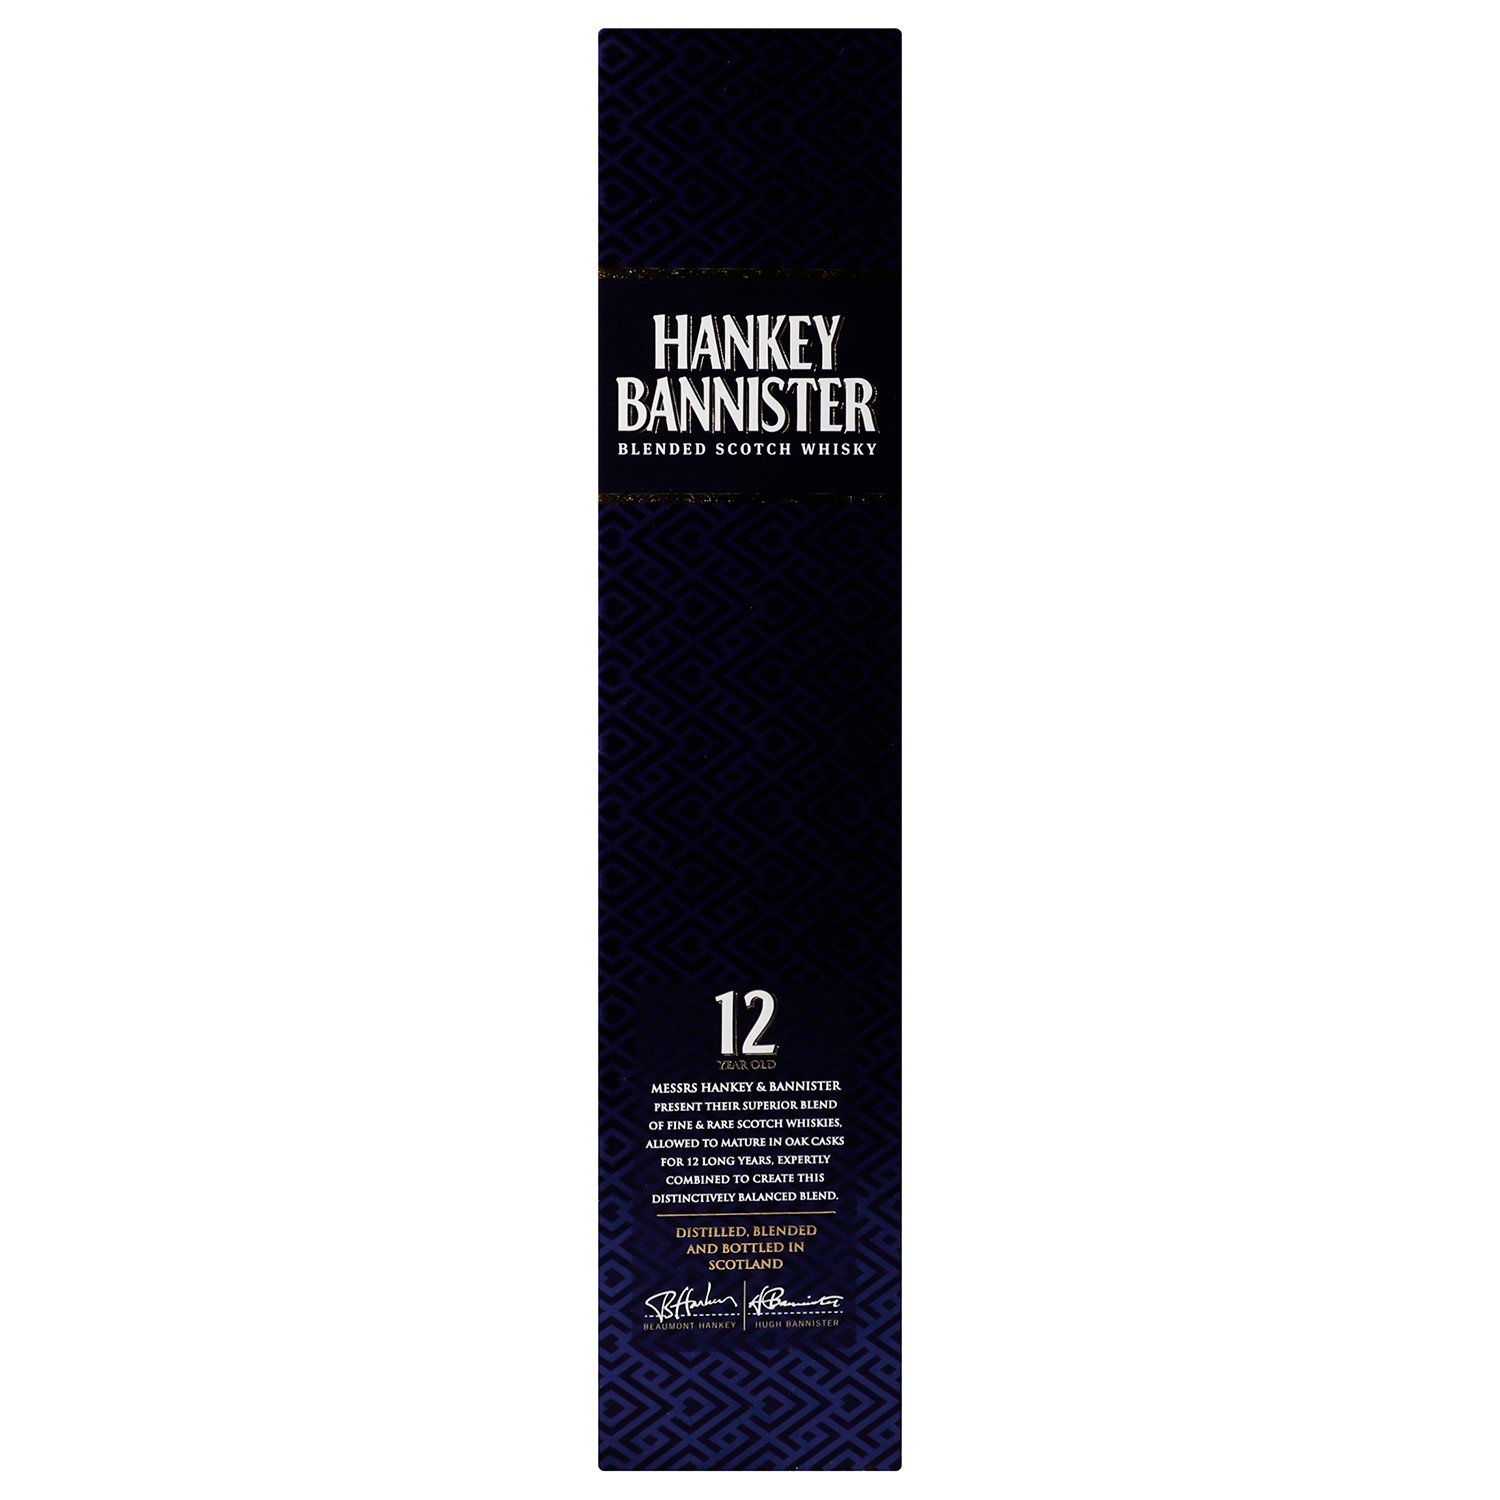 Віскі Hankey Bannister Regency 12 yo, у коробці, 40%, 0,7 л - фото 2